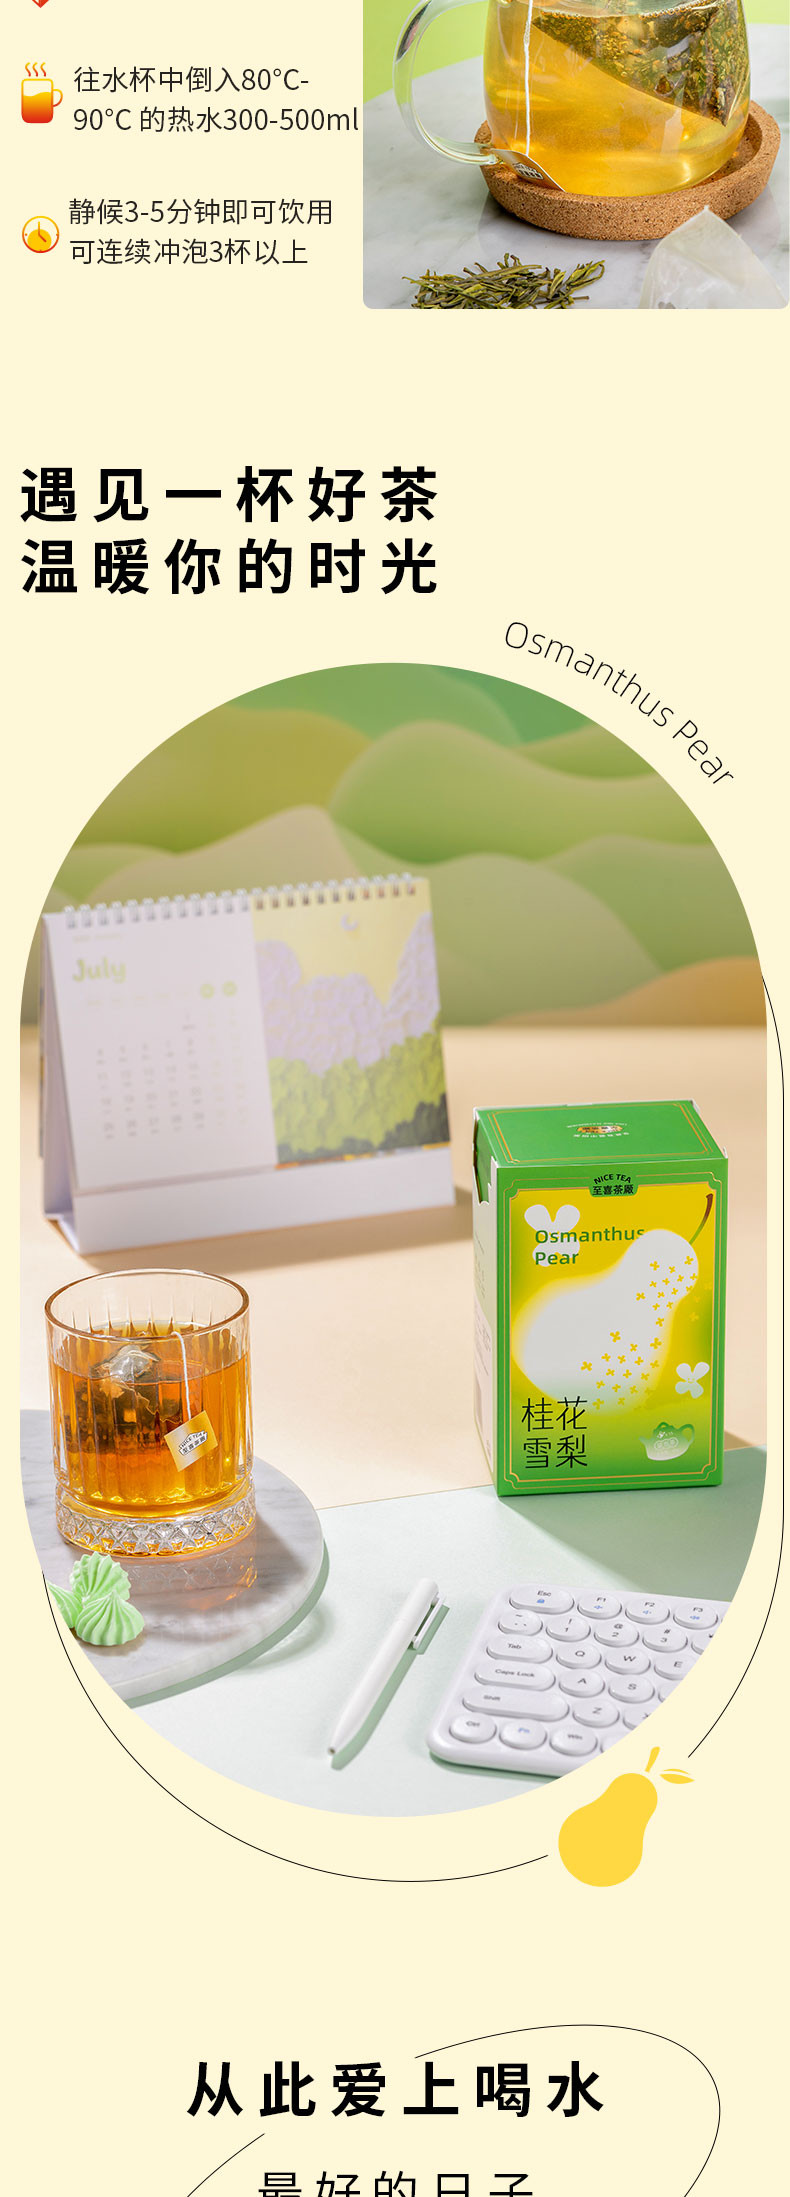 雪梨桂花茶 花果茶水果茶包独立包装袋泡茶 3g*15袋/盒